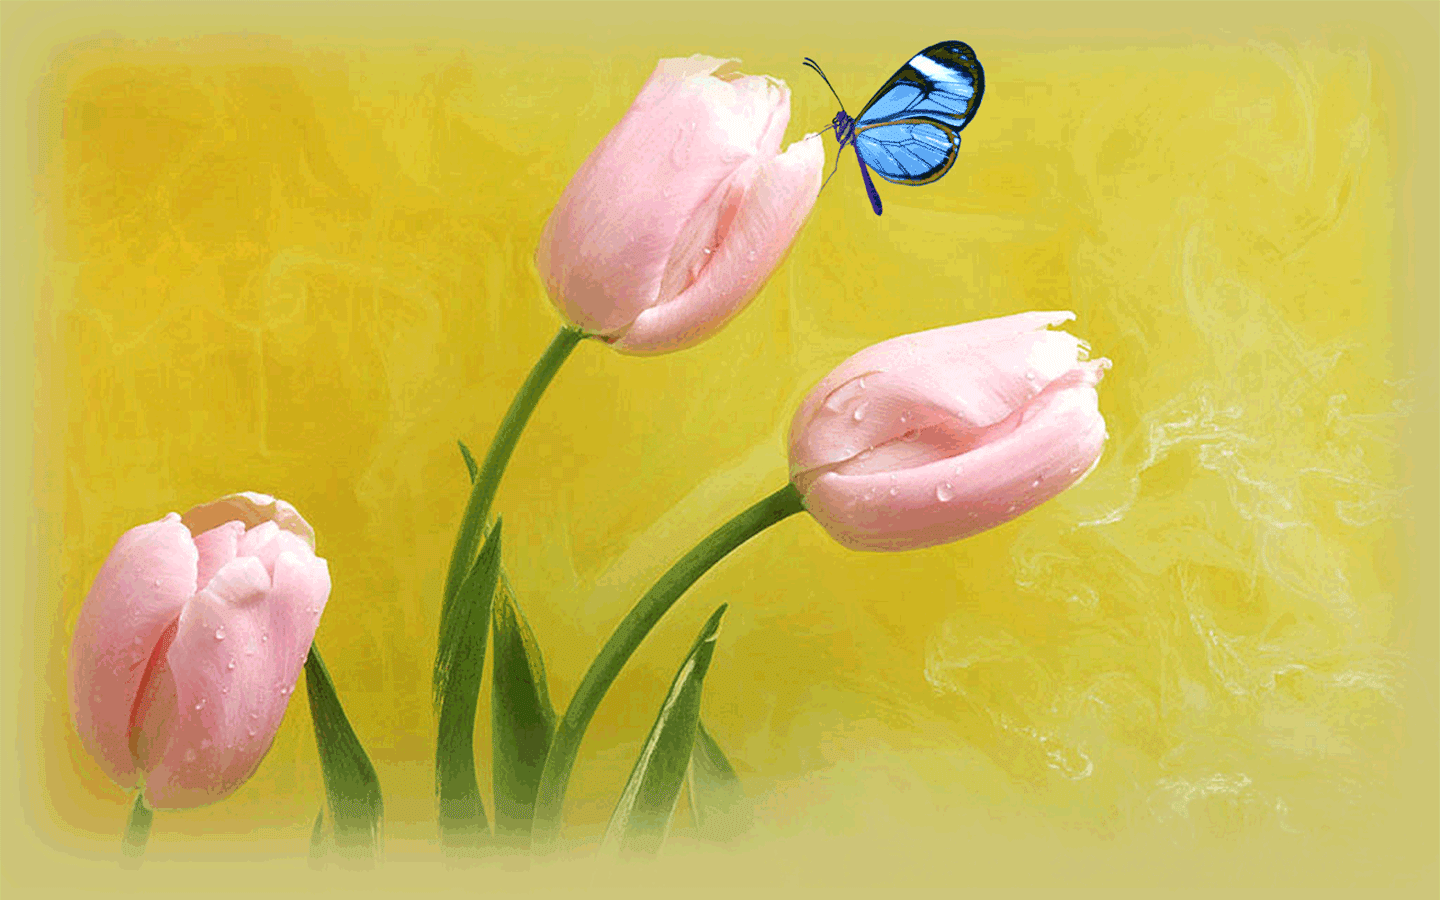 美丽的蝴蝶与花朵动态壁纸下载美丽的蝴蝶与花朵动态壁纸下载,壁纸上